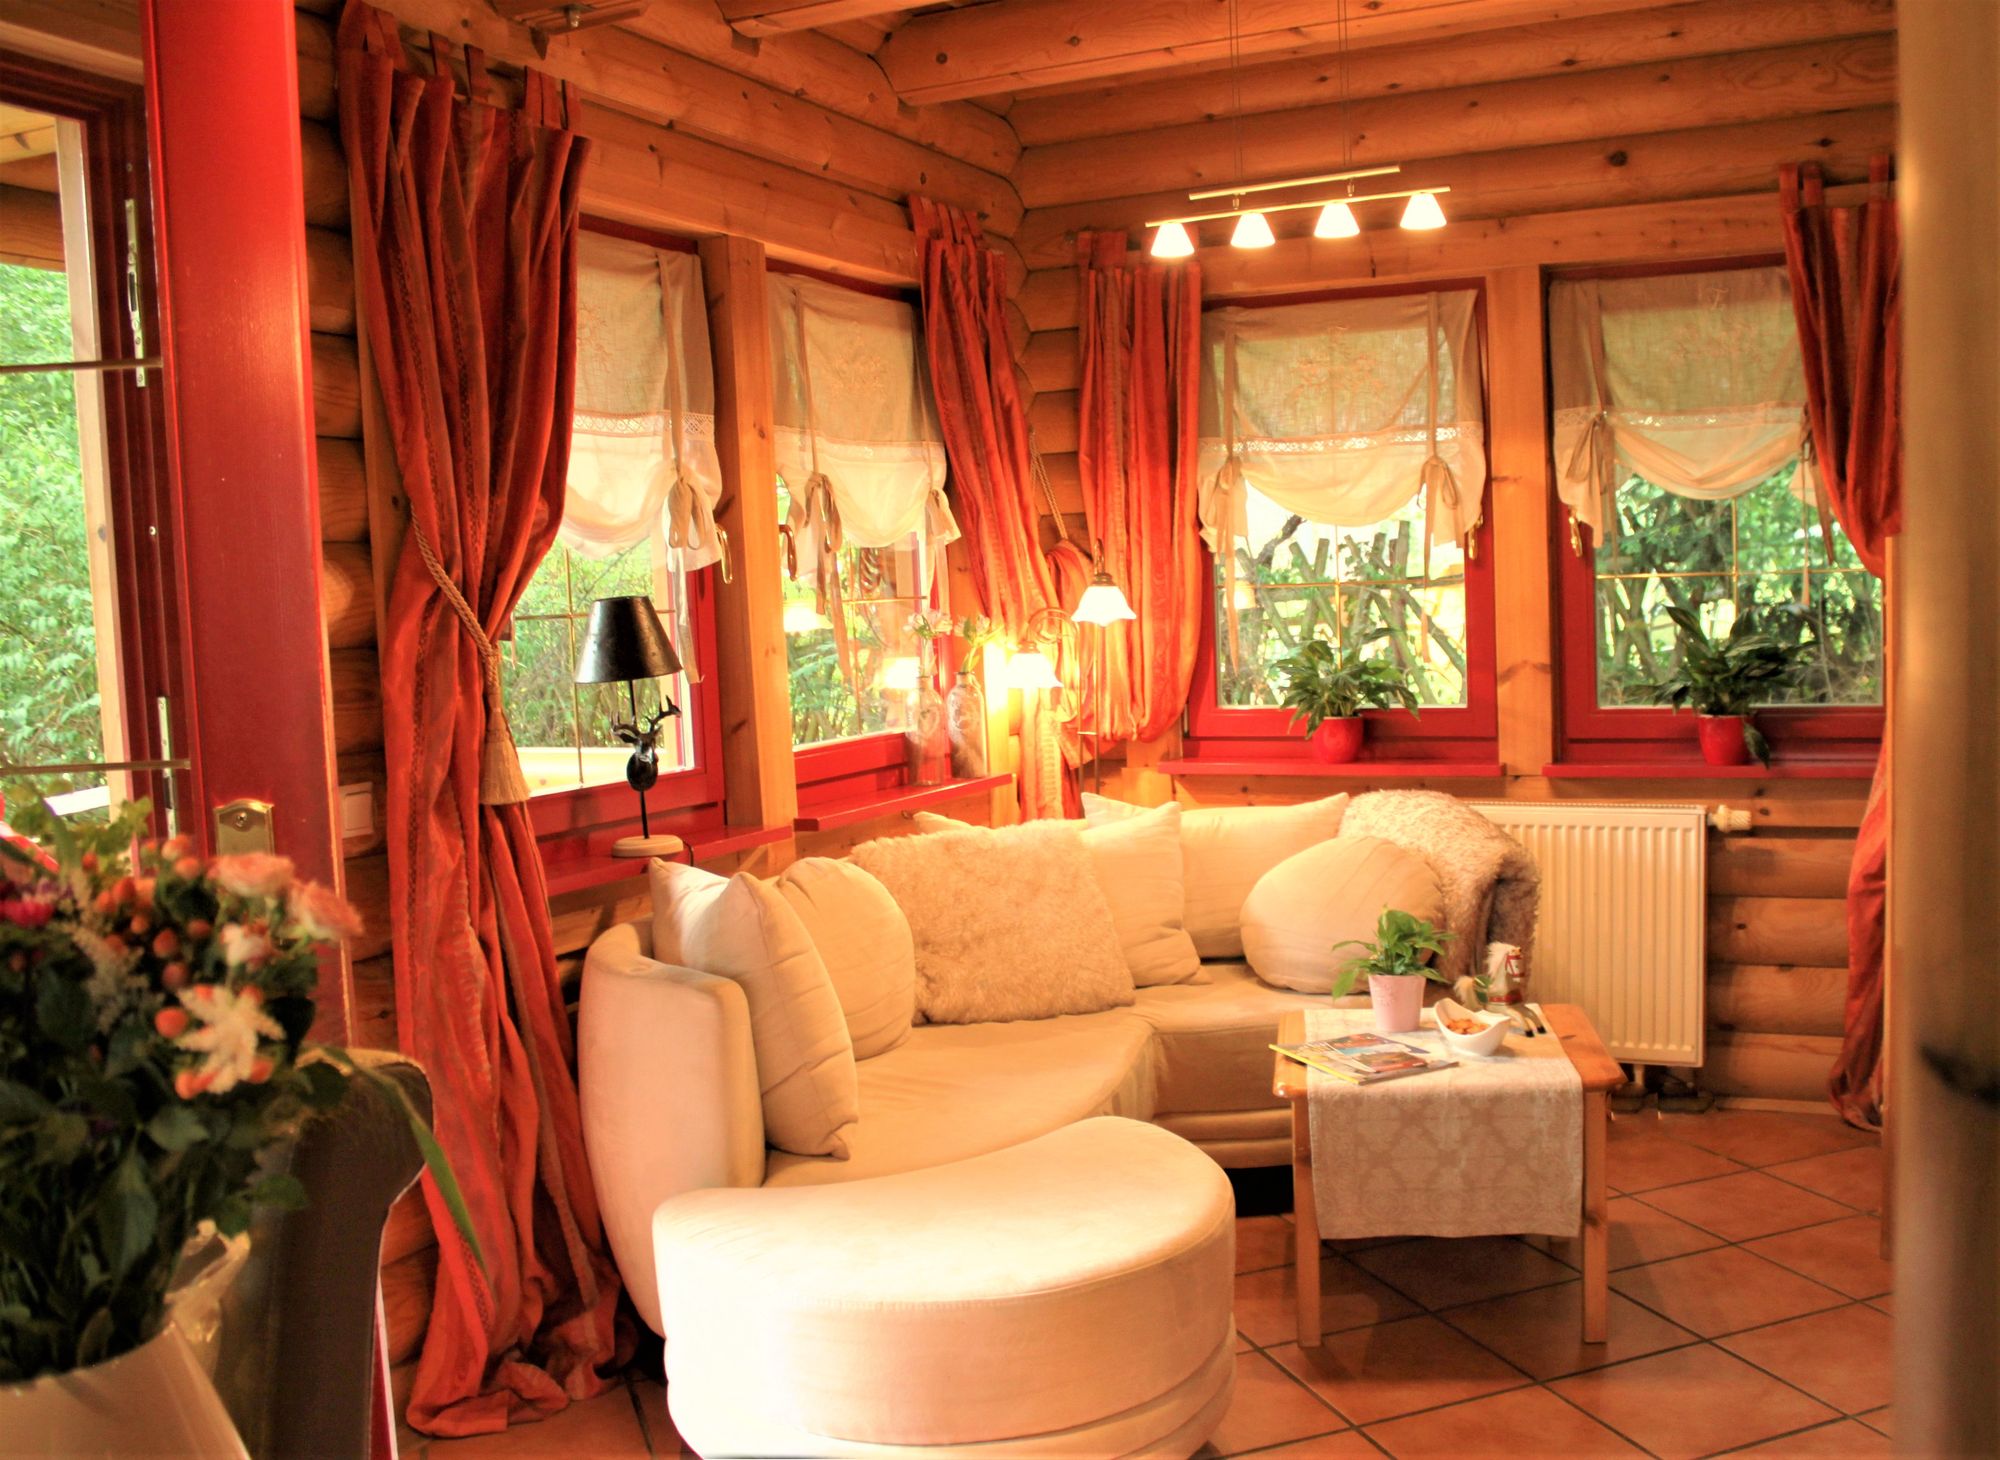 Das Wohnzimmer mit viel Holz und hellen Sitzmöbeln bedeutet Gemütlichkeit pur!<br>(Bild: Fam. Sablowski)